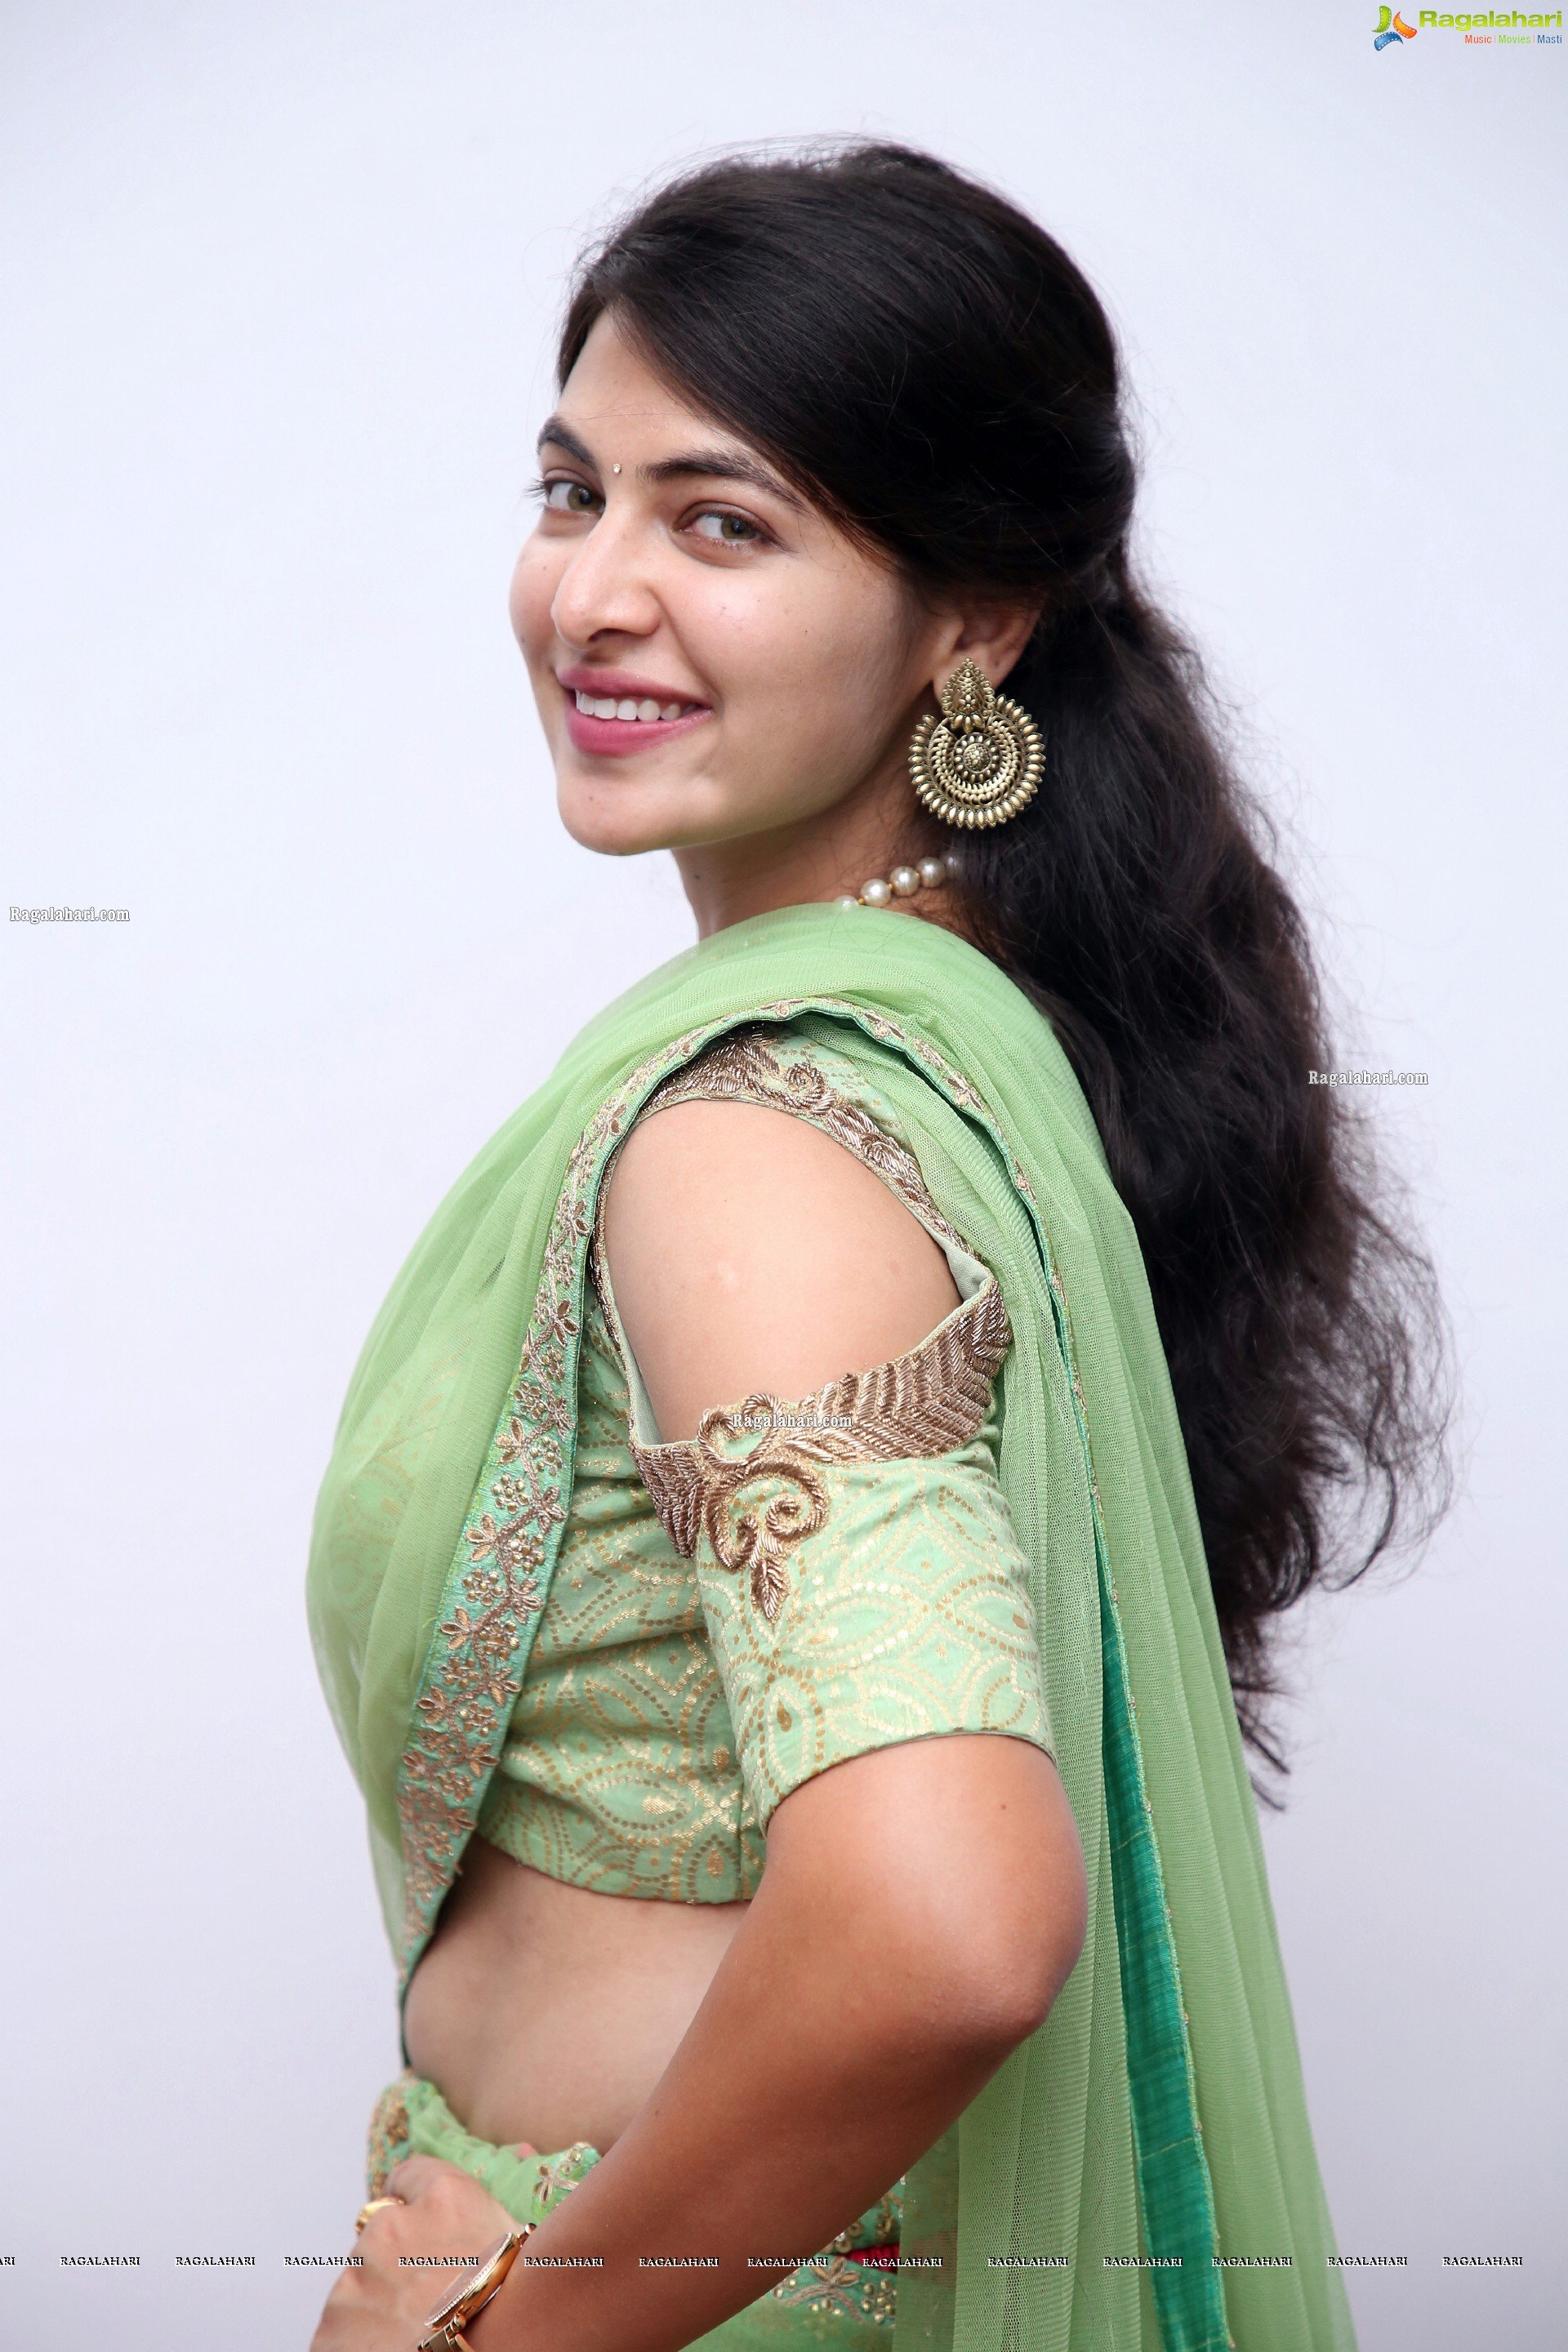 Supraja Reddy in Pink Designer Lehenga Choli, HD Photo Gallery